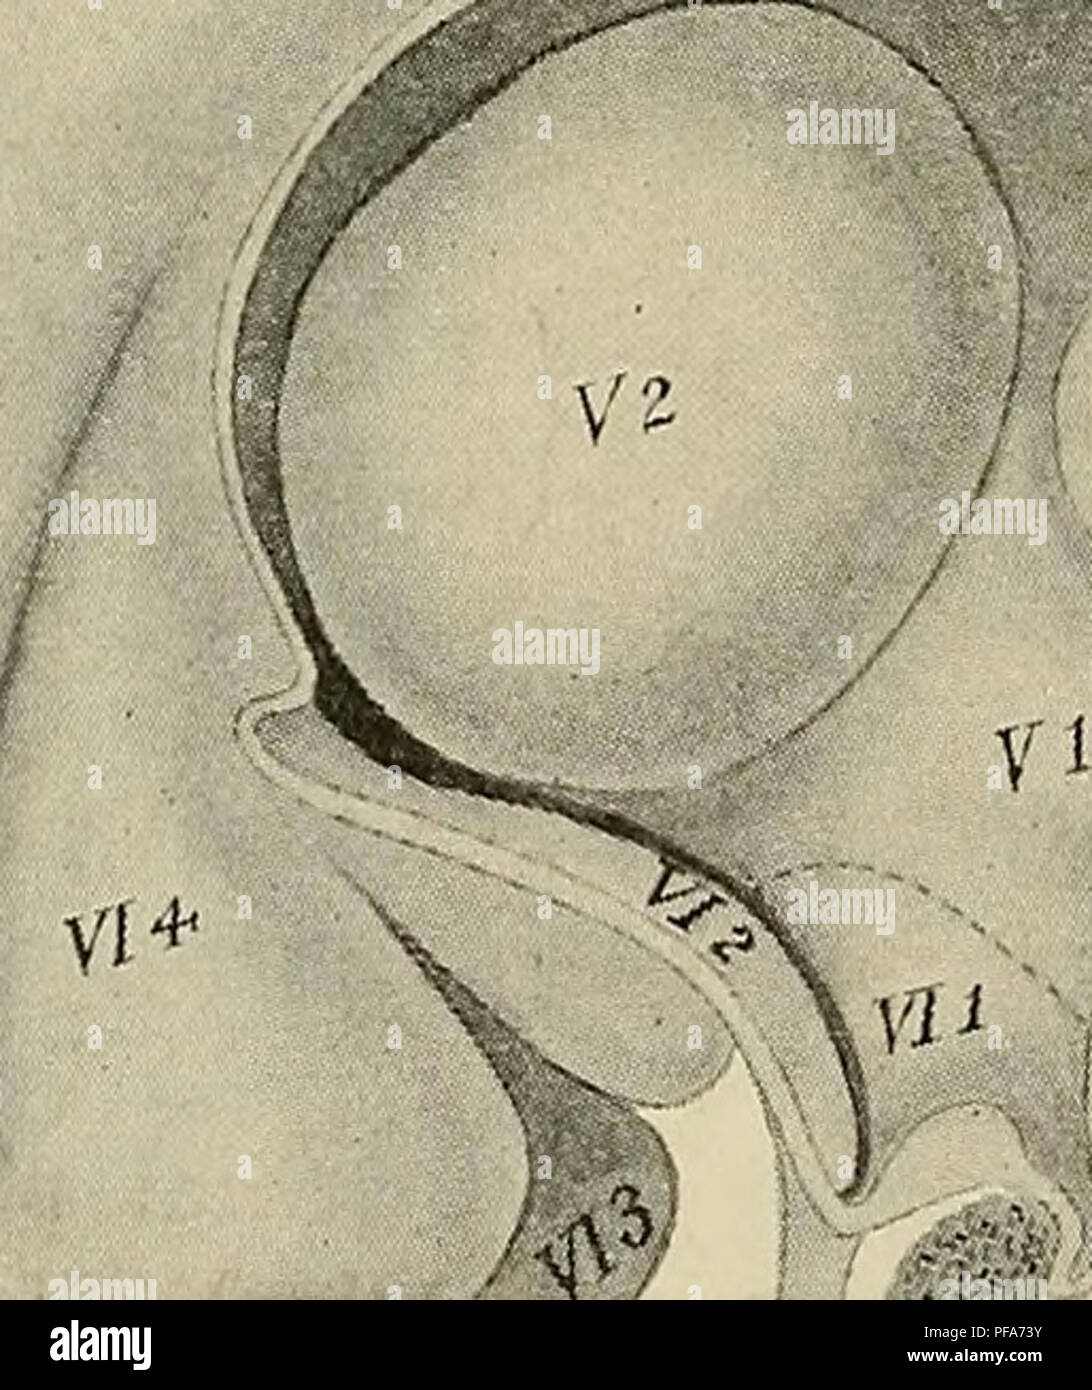 . El desarrollo del cuerpo humano : un manual de embriología humana. Embriología; Embrión, Non-Mammalian. 388 El cerebro la cavidad del tercer vesícula persiste en el adulto como el cuarto ventrículo, atravesando todas las subdivisiones de la vesícula; la del segundo, aumentando pero poco en altura y anchura, constituye el aquaductus cerebri; mientras que la de la primera vesícula es continuado en los hemisferios cerebrales para formar los ventrículos laterales, el resto de integrantes del tercer ventrículo, que incluye la cavidad de la parte media de la telencephalon así como el conjunto de la CAV. Foto de stock